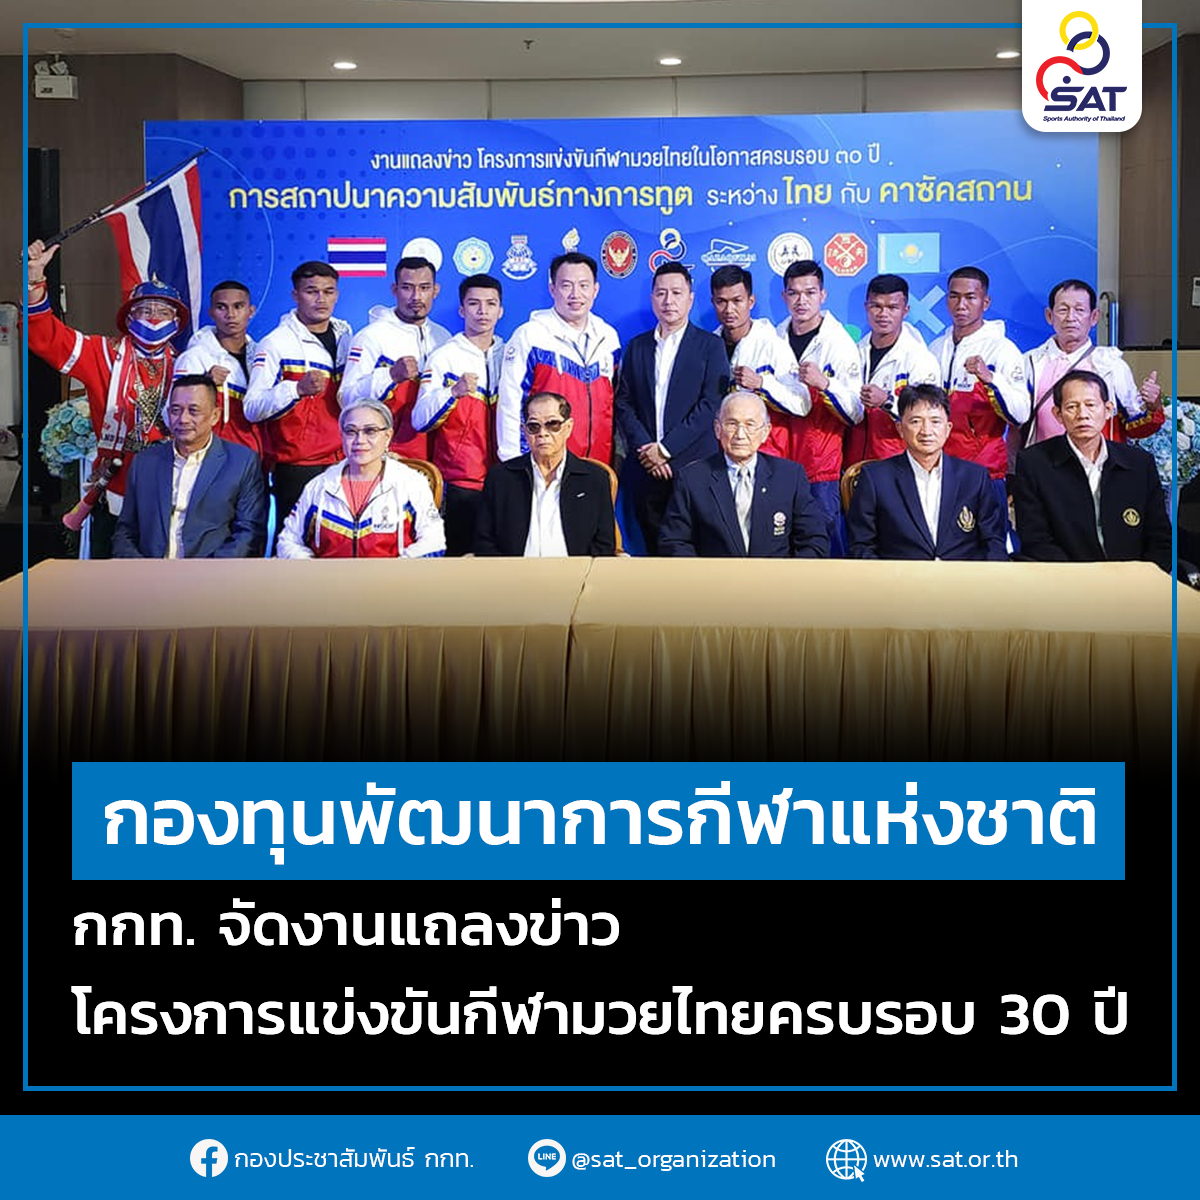 กองทุนพัฒนาการกีฬาแห่งชาติ กกท. จัดงานแถลงข่าว โครงการแข่งขันกีฬามวยไทยครบรอบ 30 ปี การสถาปนาความสัมพันธ์ทางการทูต ระหว่าง ประเทศไทยและสาธารณรัฐคาซัคสถาน – ข่าวกีฬา